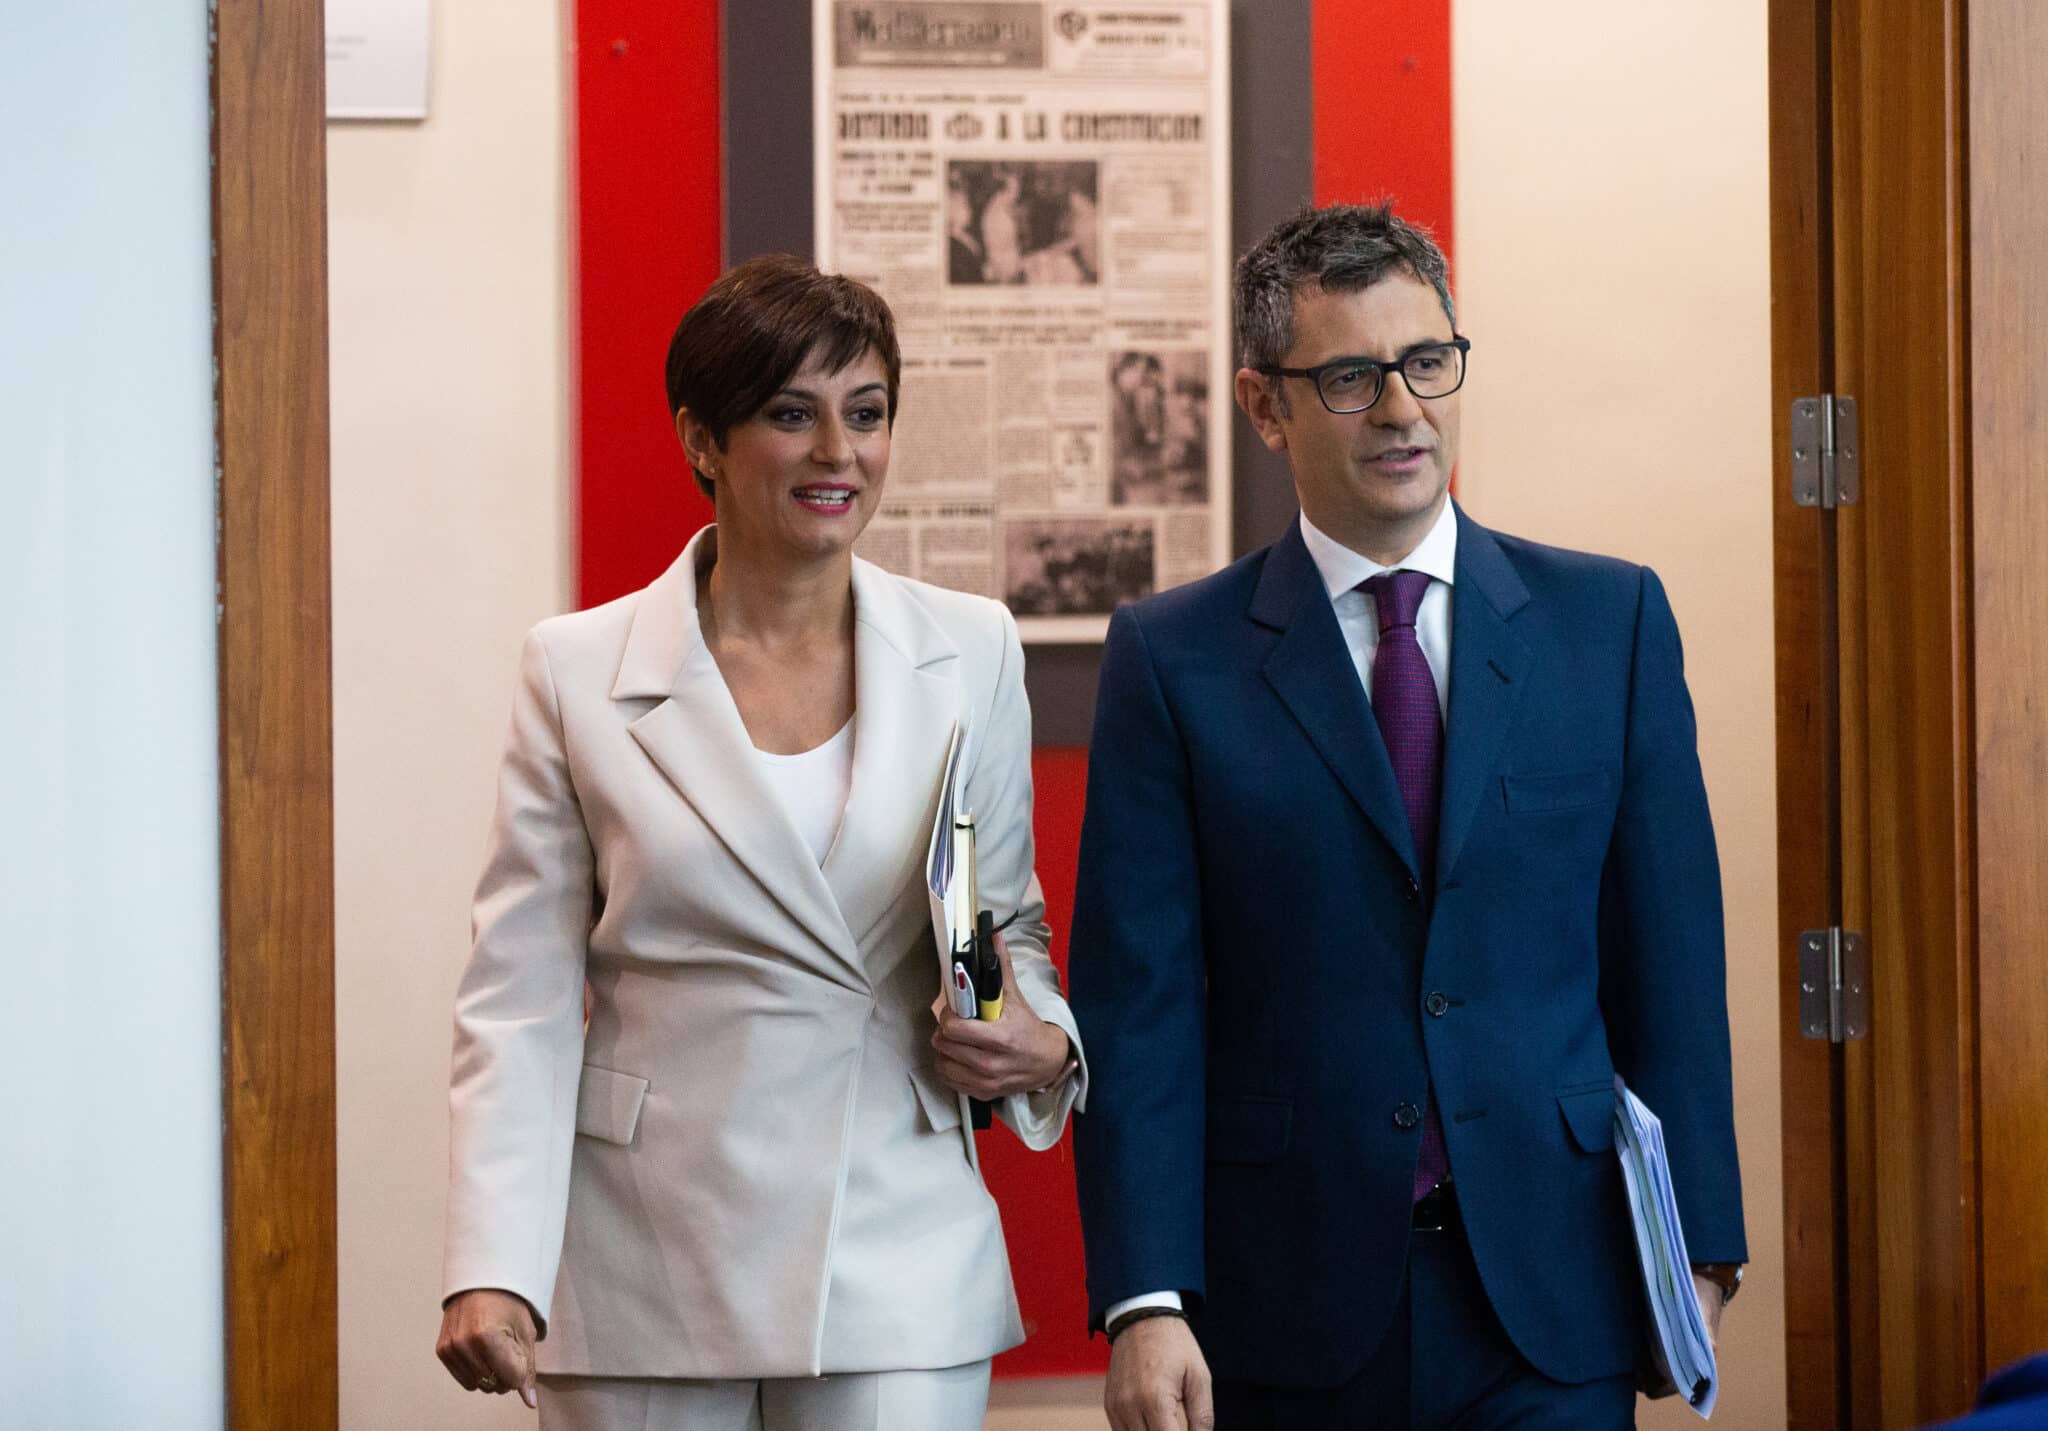 La ministra Portavoz, Isabel Rodríguez y el ministro de Presidencia, Félix Bolaños, a su llegada a una rueda de prensa posterior al Consejo de Ministros